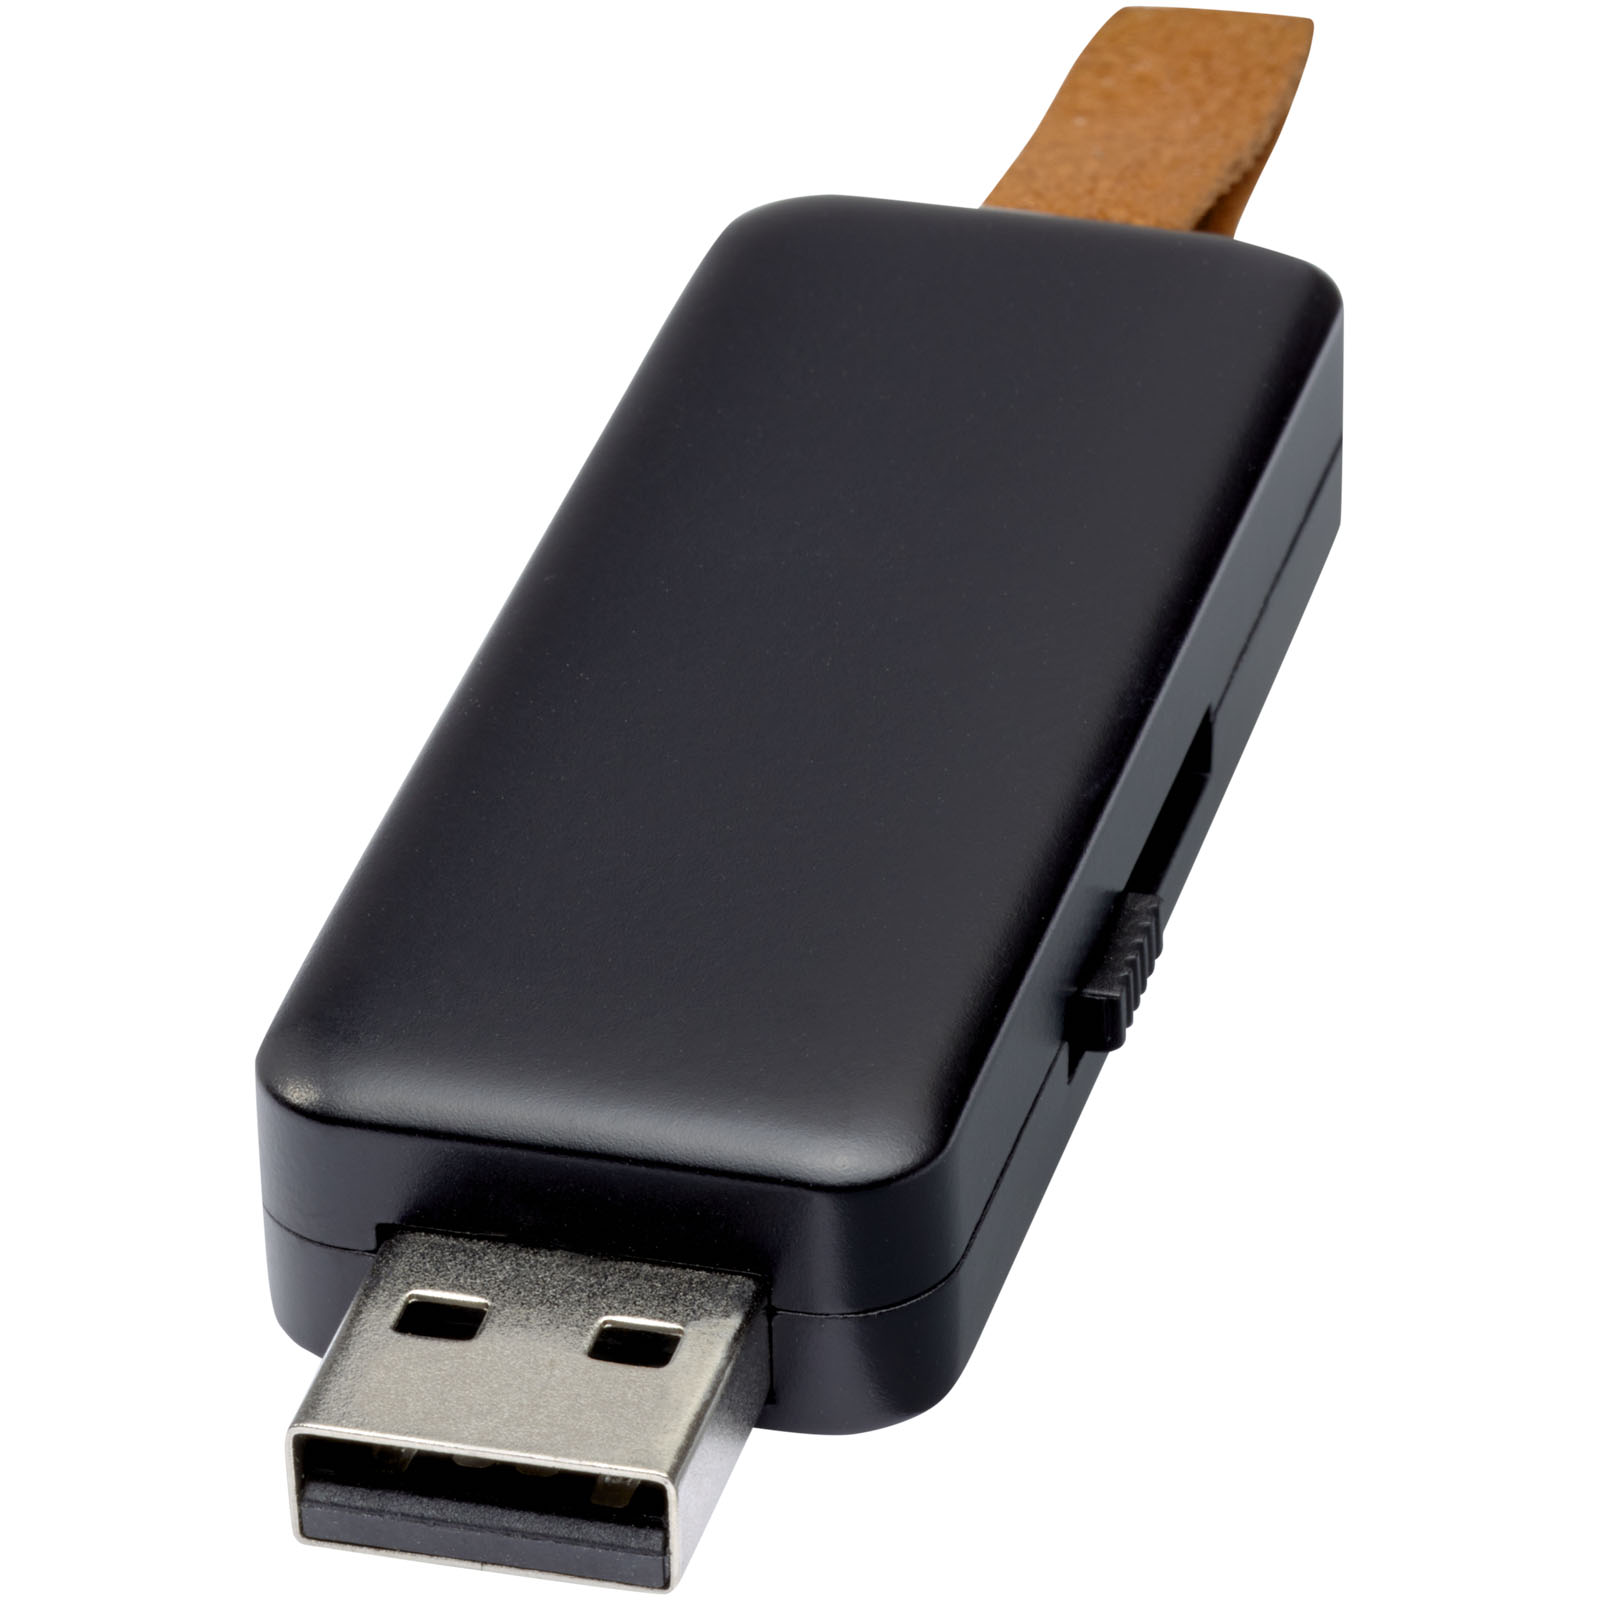 Clés USB - Clé USB lumineuse Gleam 16 Go